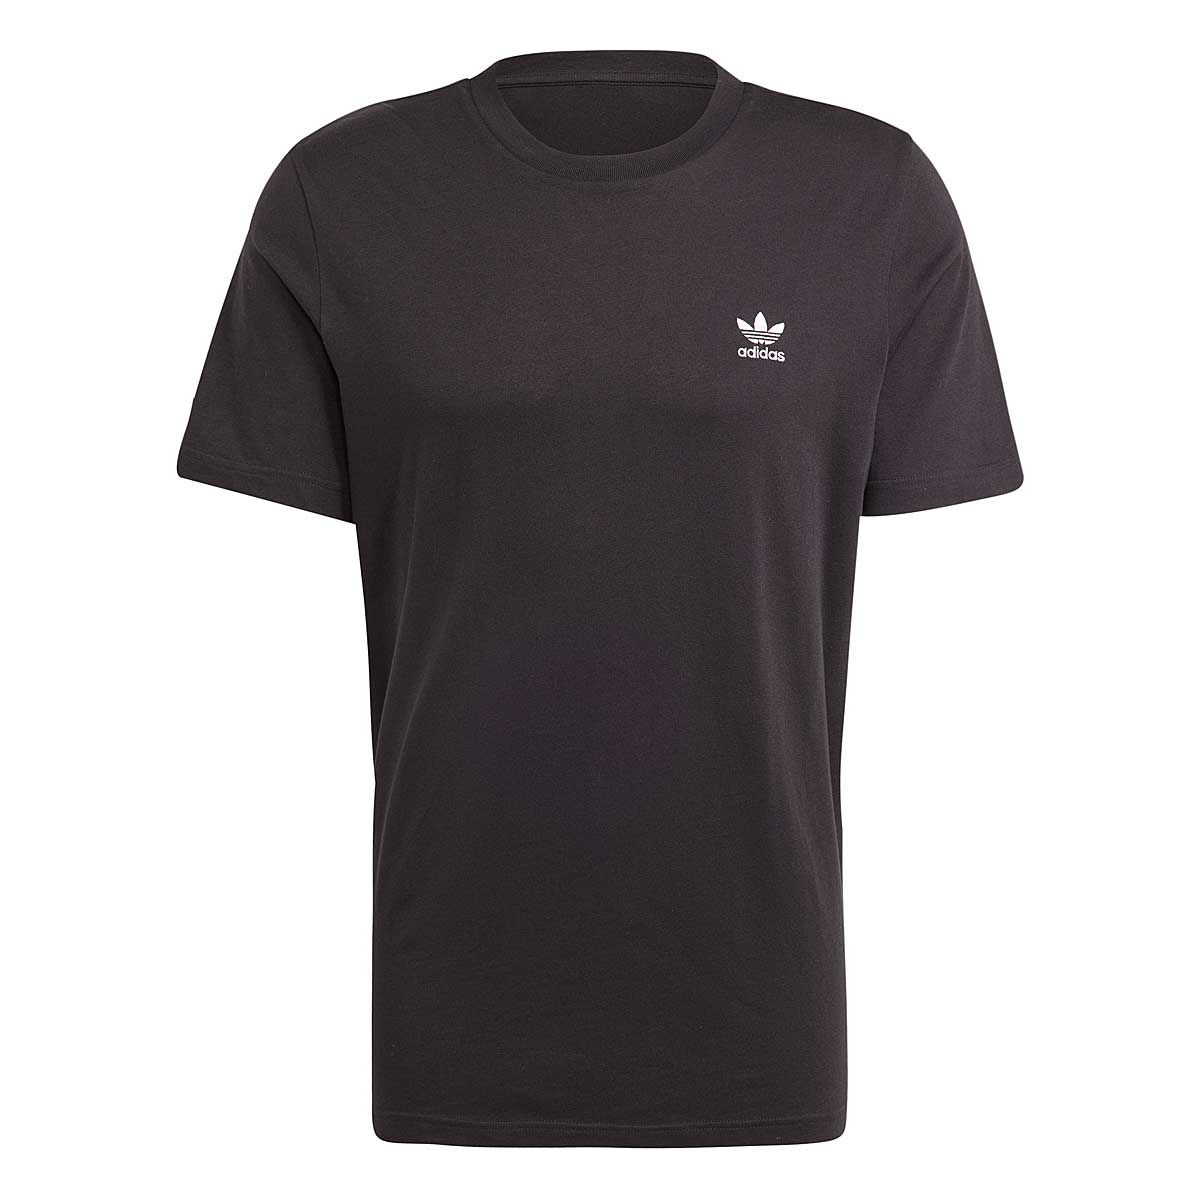 Adidas Trefoil Essentials T-shirt, Schwarz/weiß S